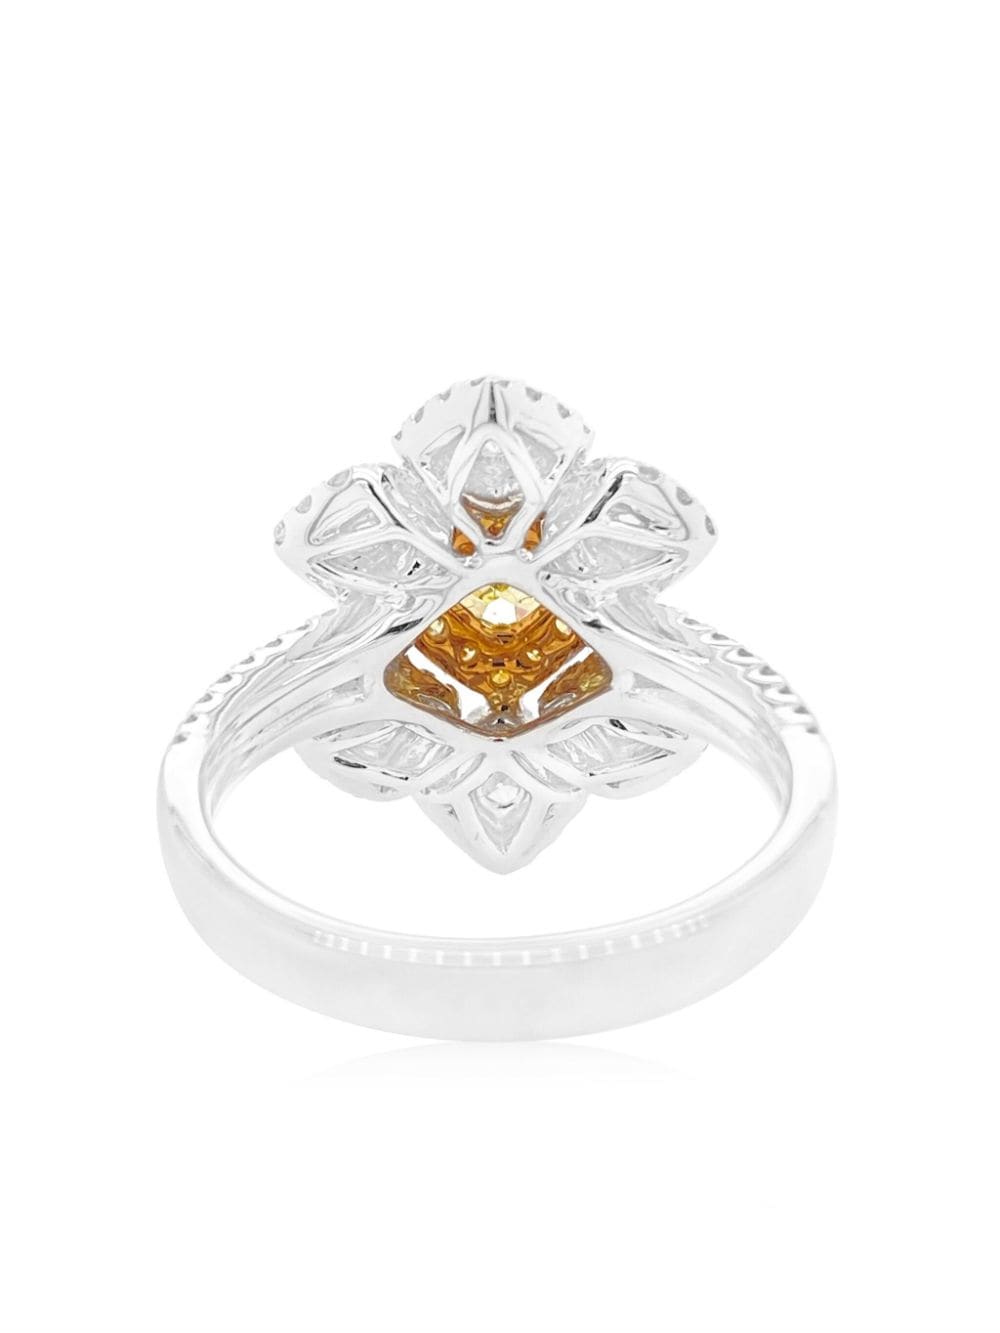 Shop Hyt Jewelry Platinum Yellow And White Diamond Ring